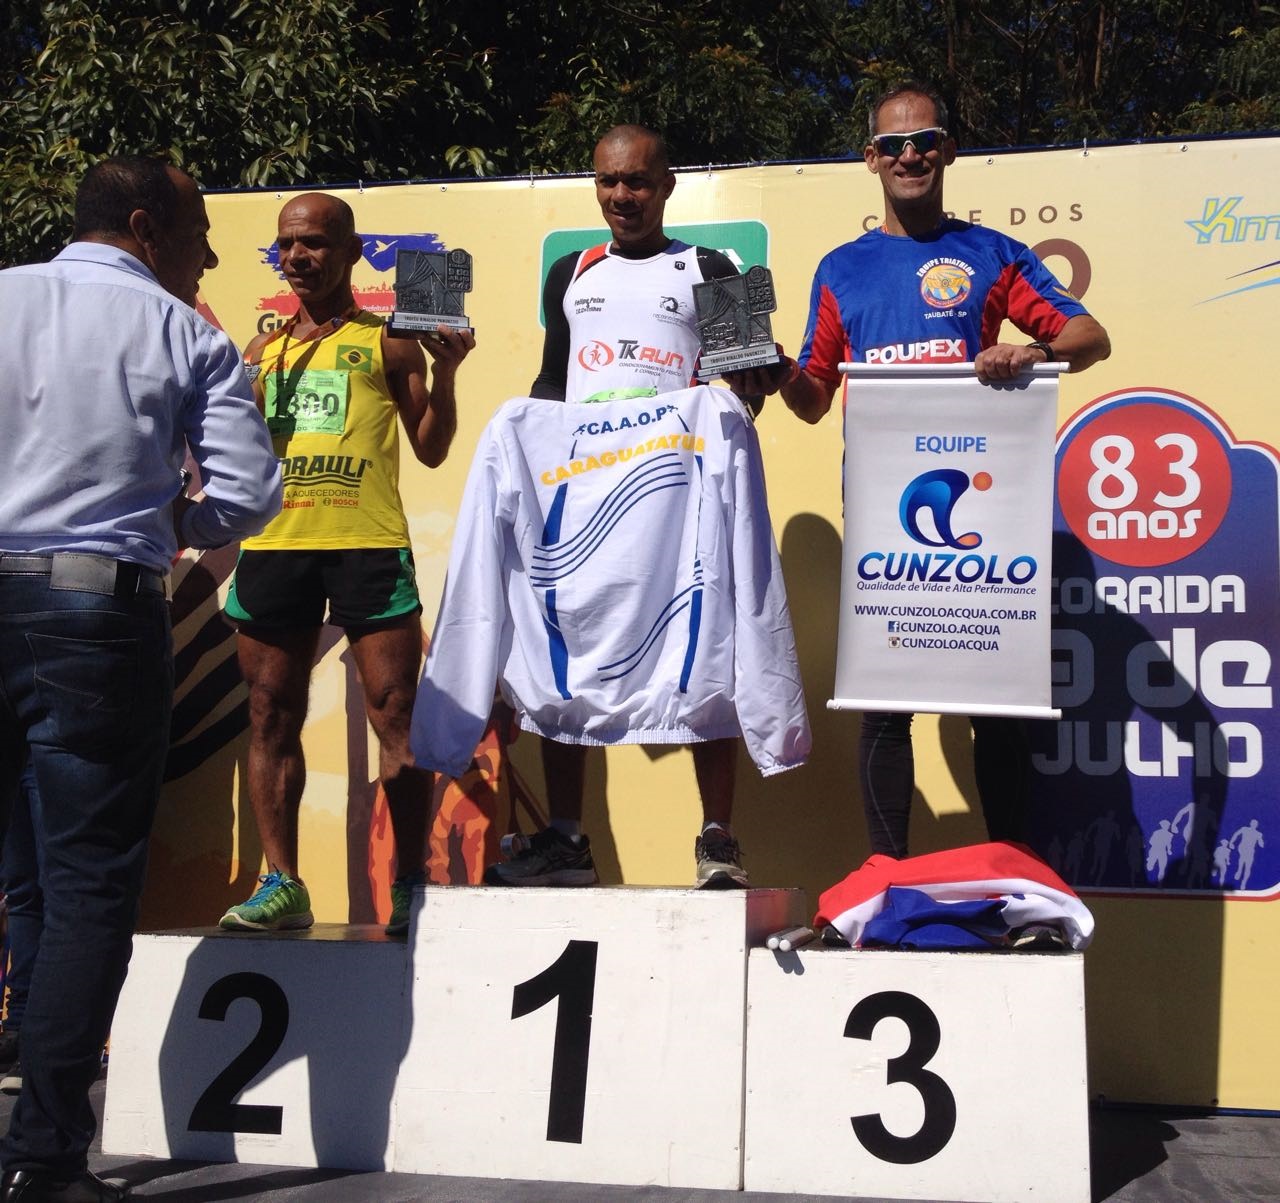 Militar do Triathlon Poupex/ Avex é 3º colocado em Guará